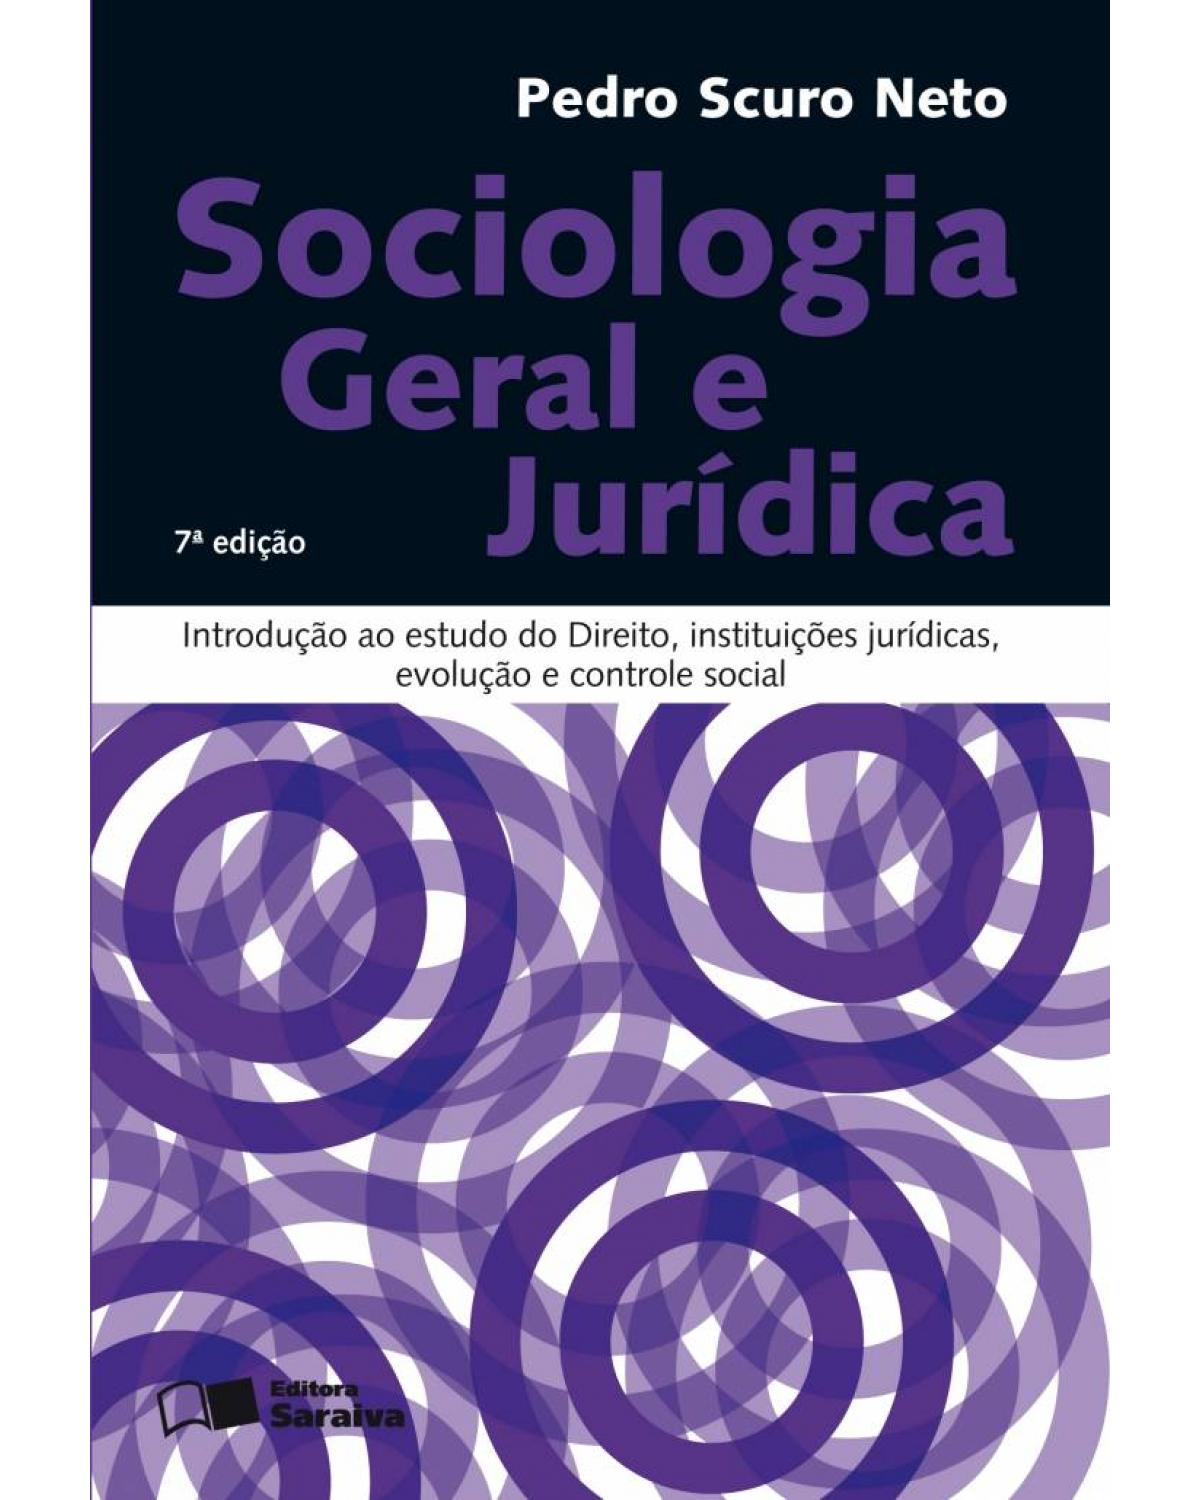 Sociologia geral e jurídica - introdução ao estudo do direito, instituições jurídicas, evolução e controle social - 7ª Edição | 2008